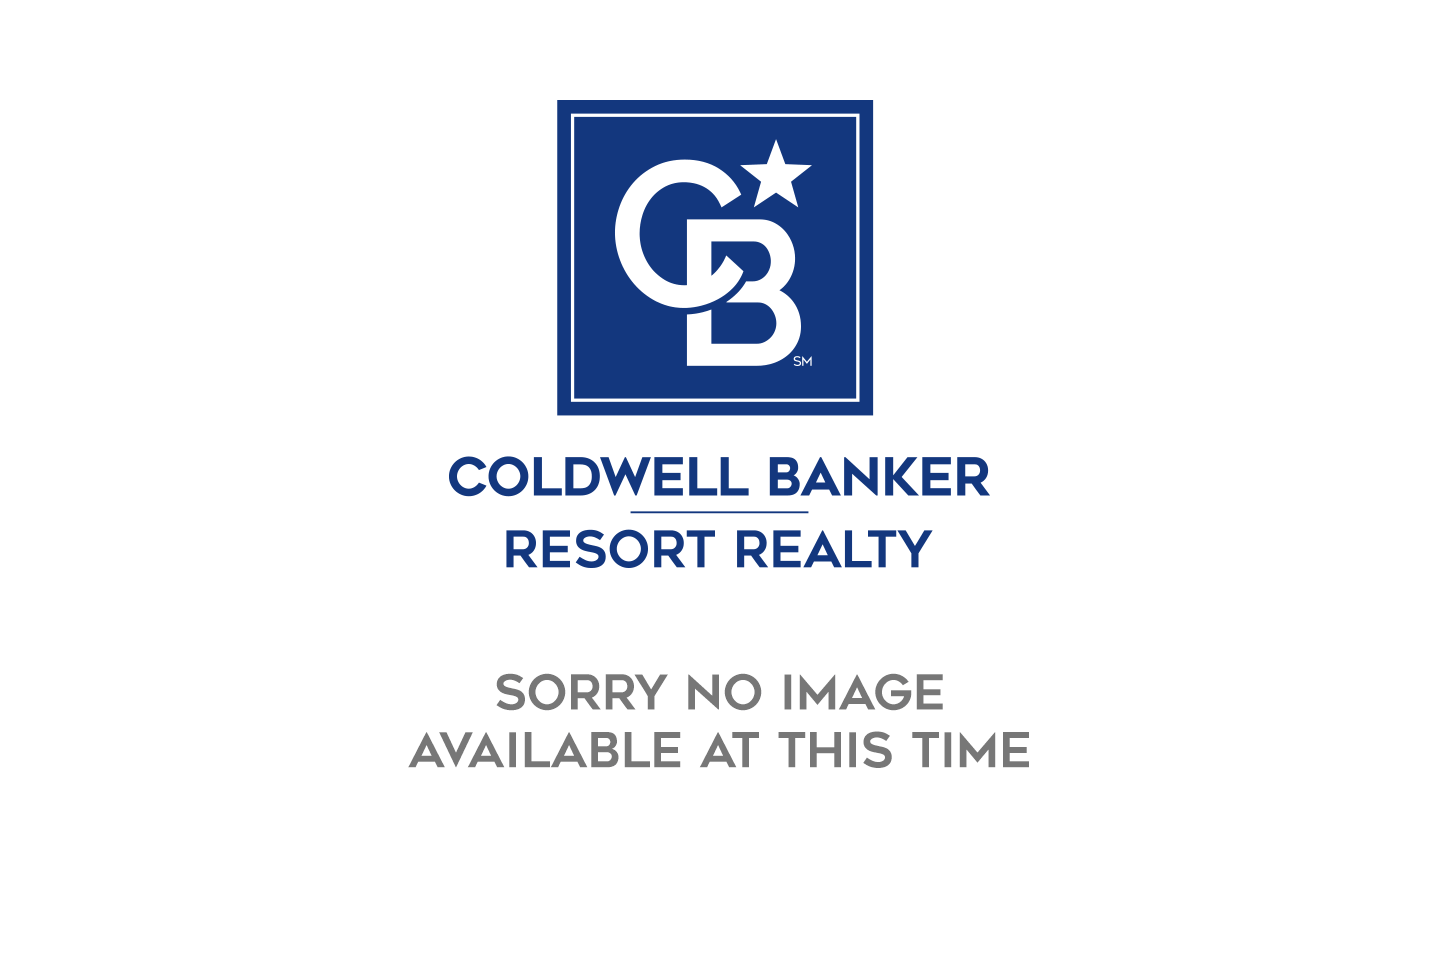 noimage Bridgeville - Coldwell Banker Resort Realty